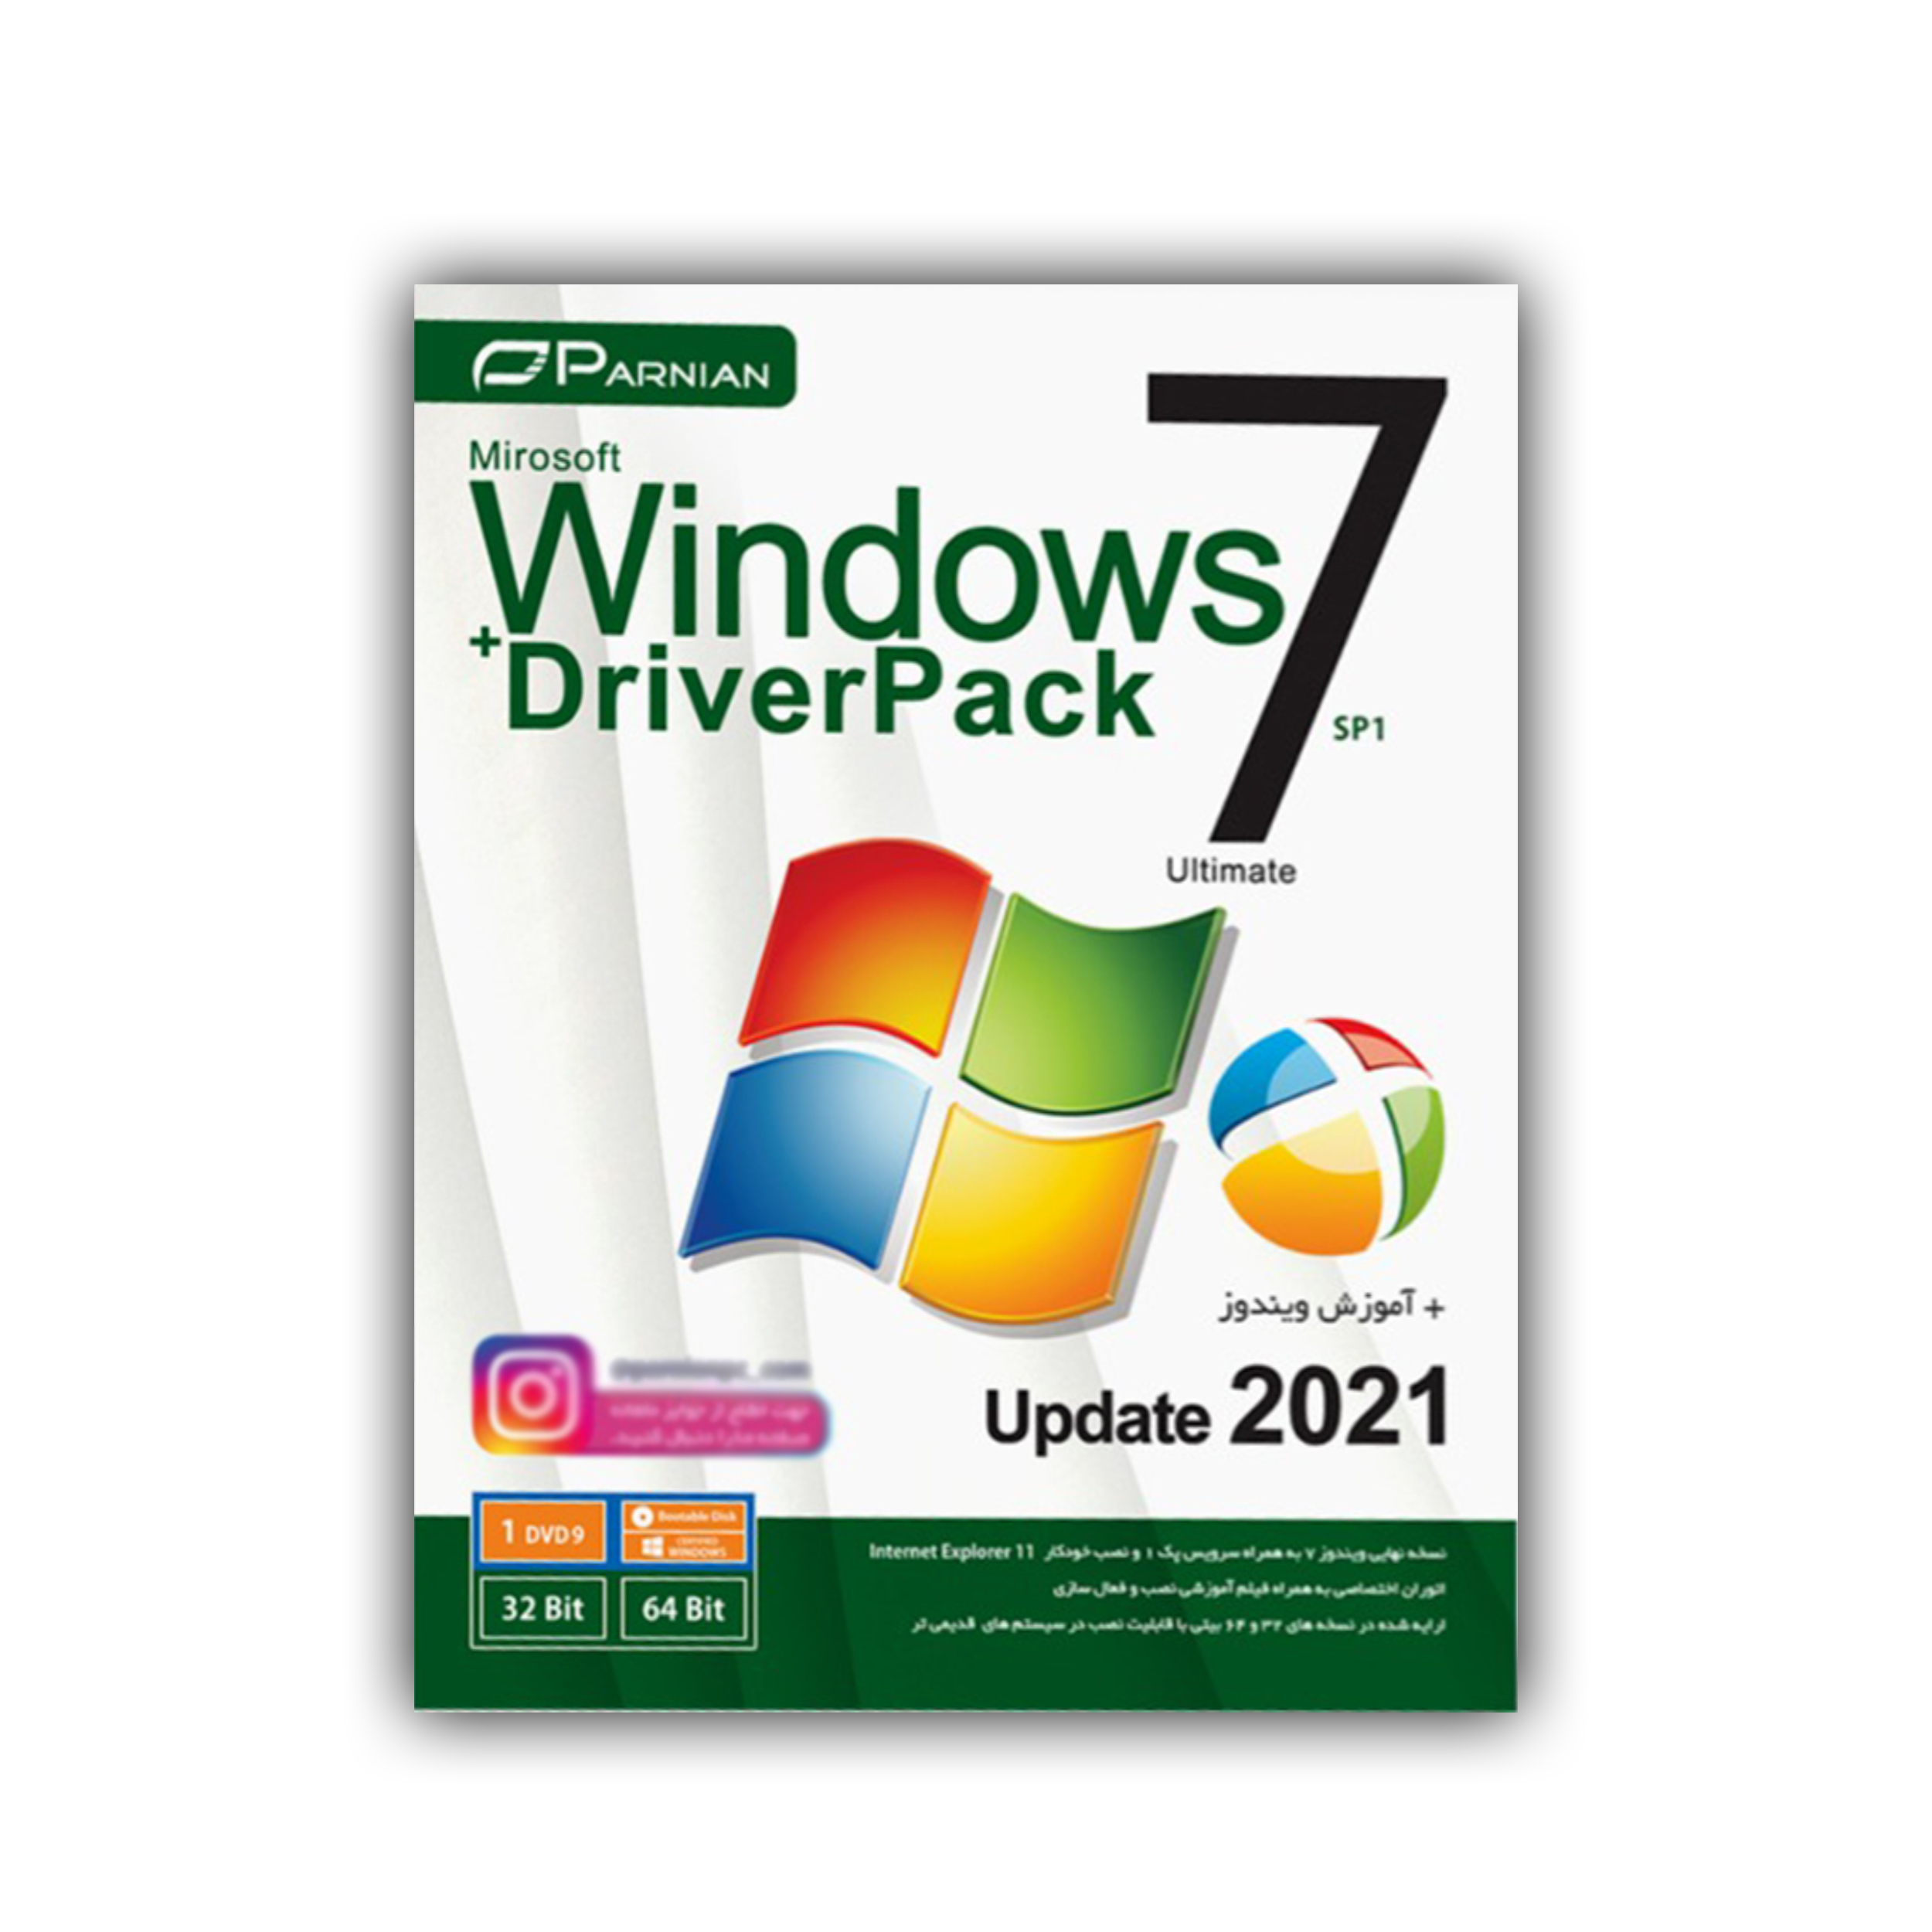 سیستم عامل Windows 7 SP1 Update 2021 Driverpack نشر پرنیان